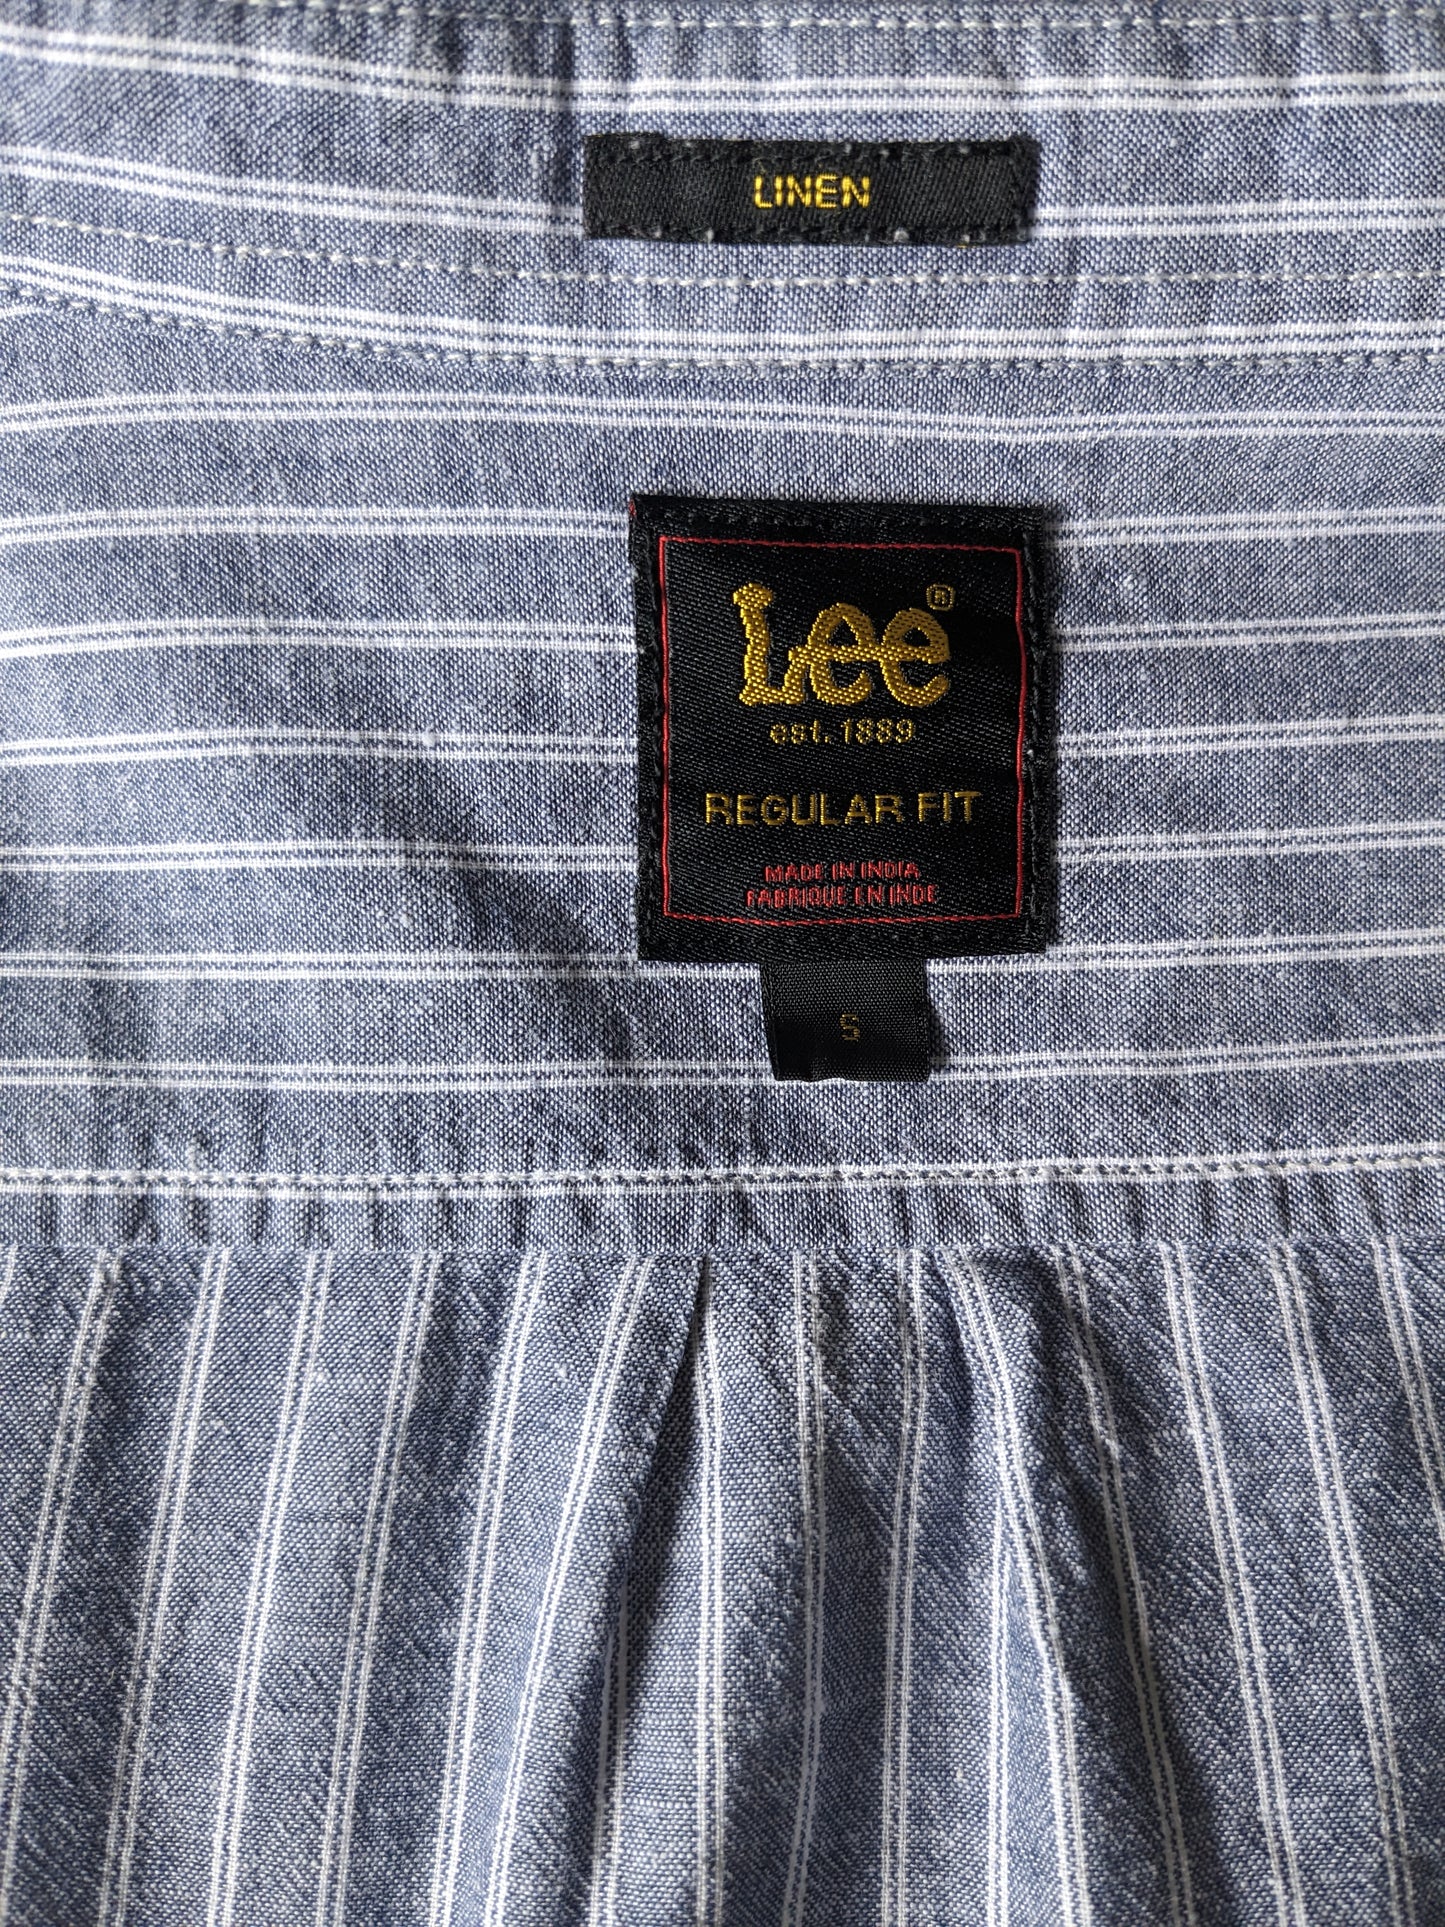 Camisa de lino Lee. Blanco azul rayado. Tamaño S. Ajuste regular. 88% algodón y 12% de lino.